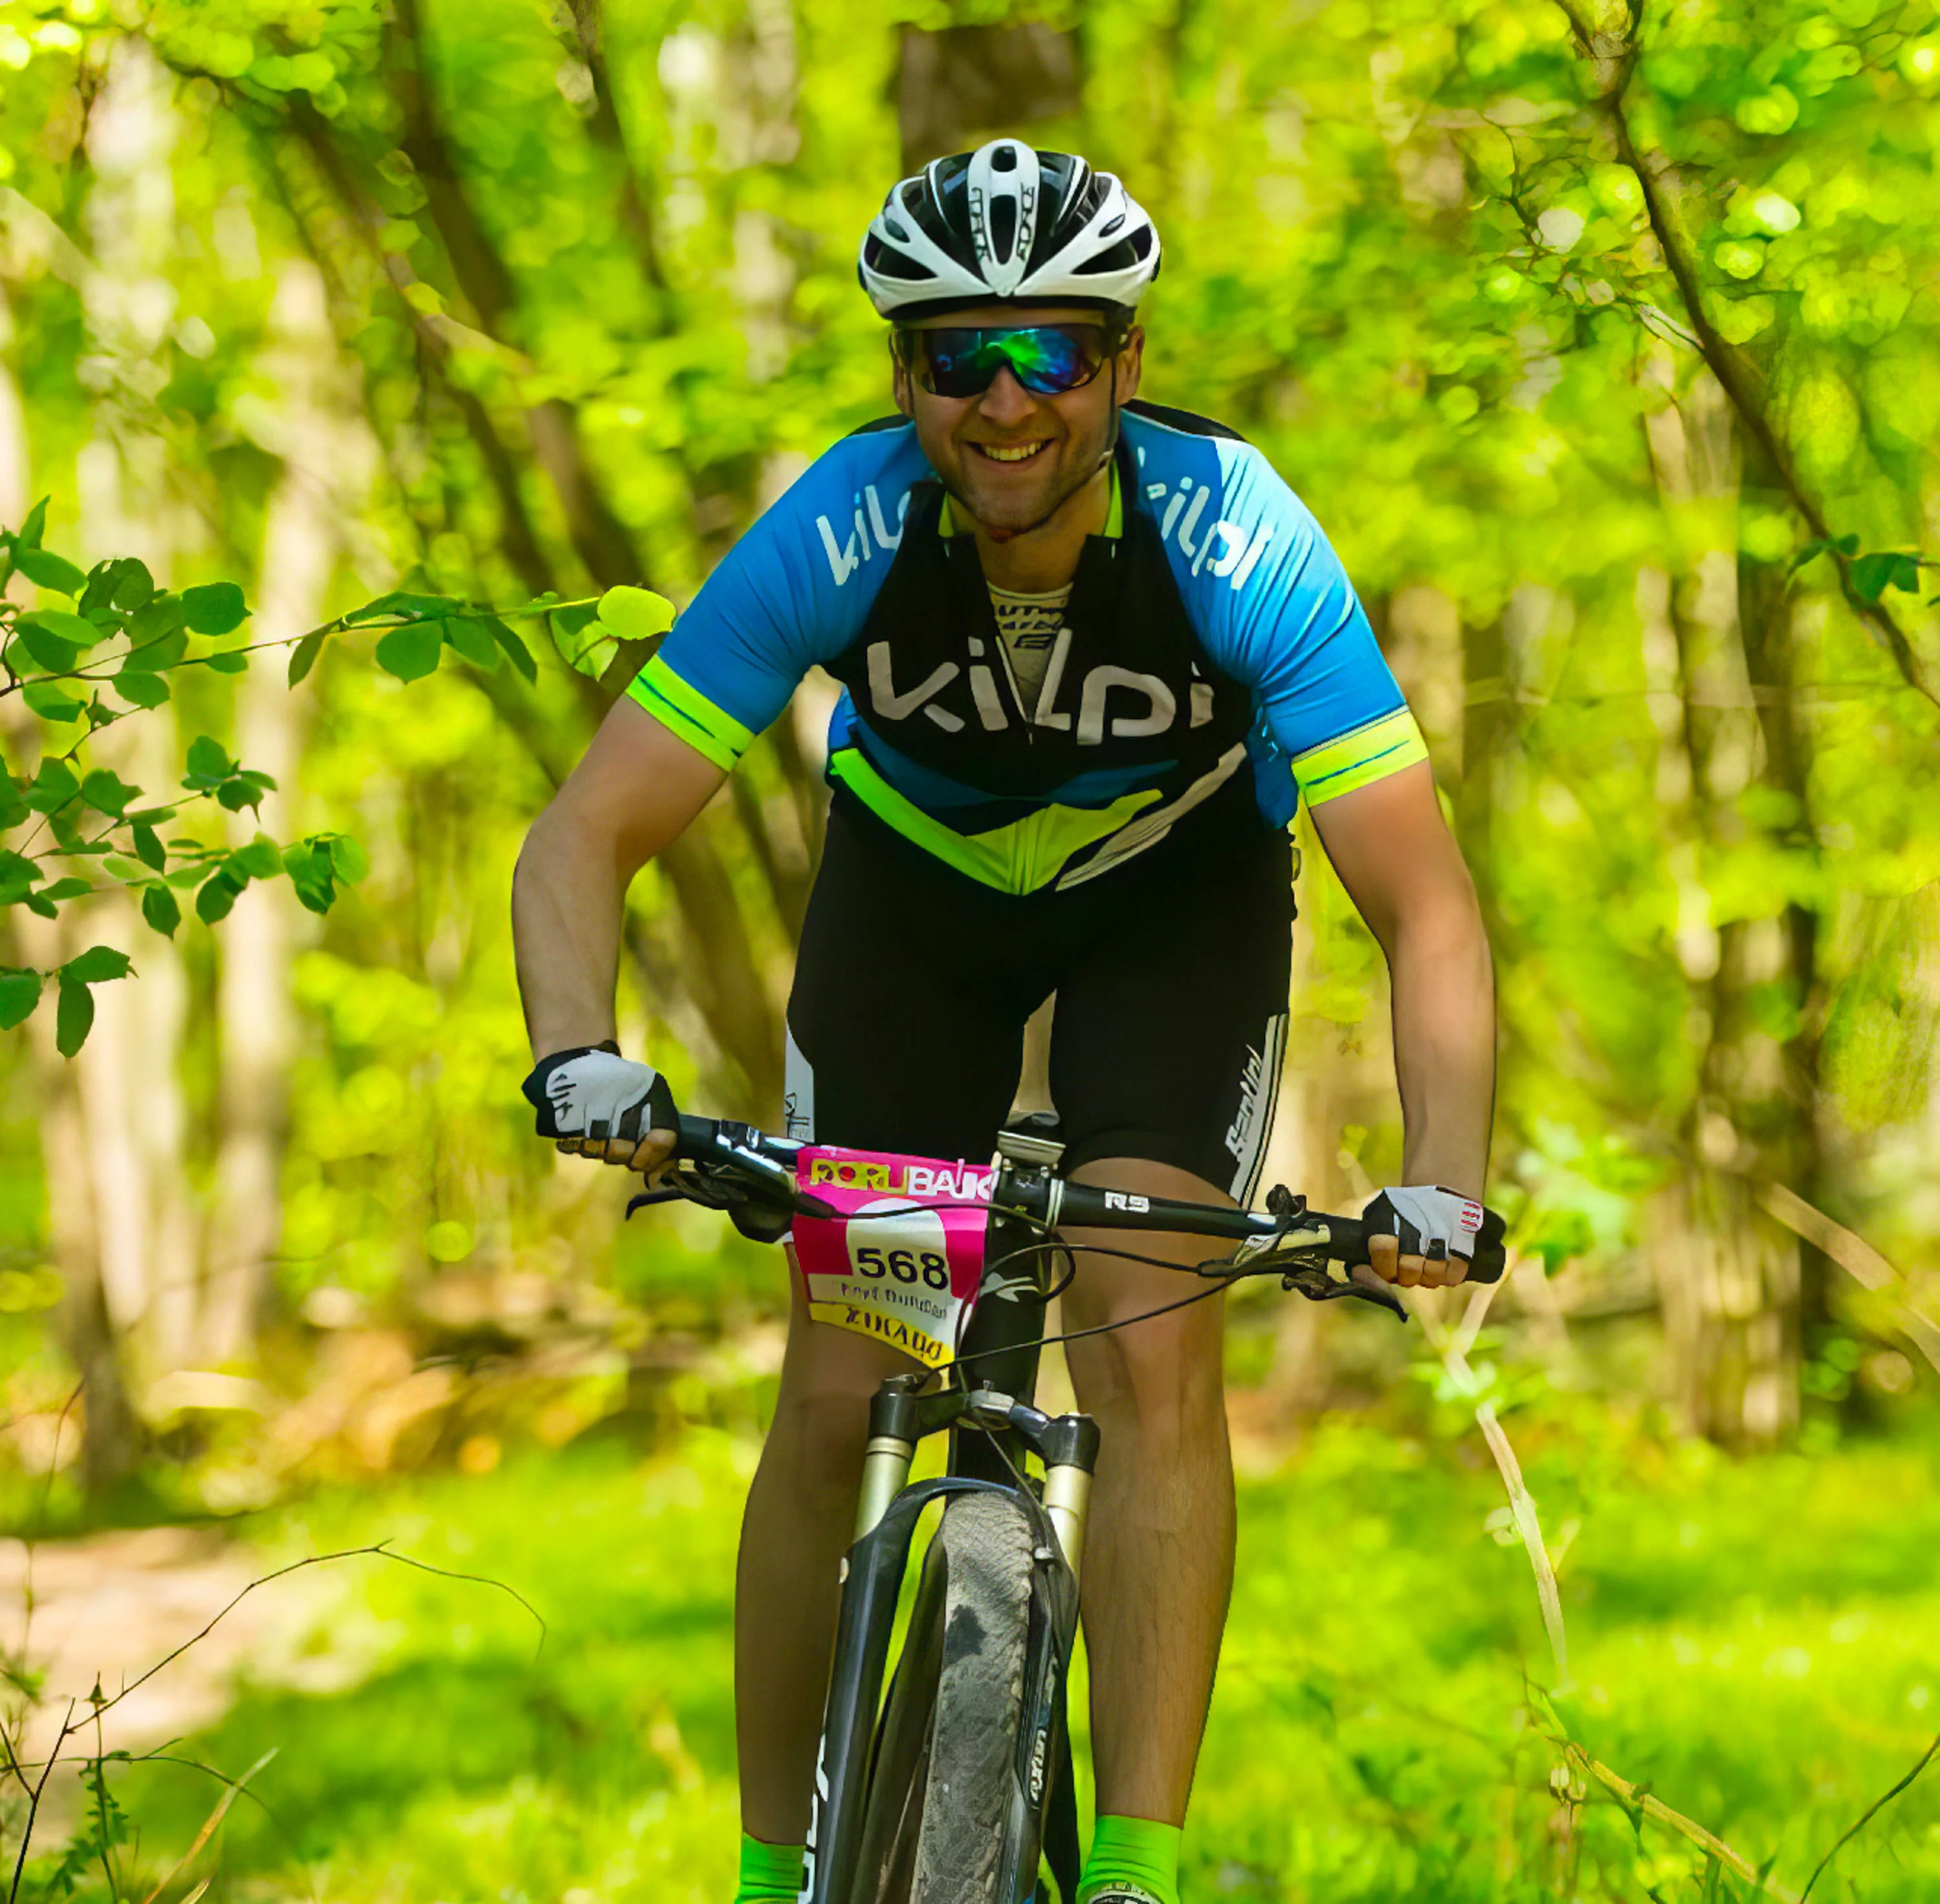 Úspěšný klient Bohdan Fryc (Bike Club Ostrava - Kilpi racing team)